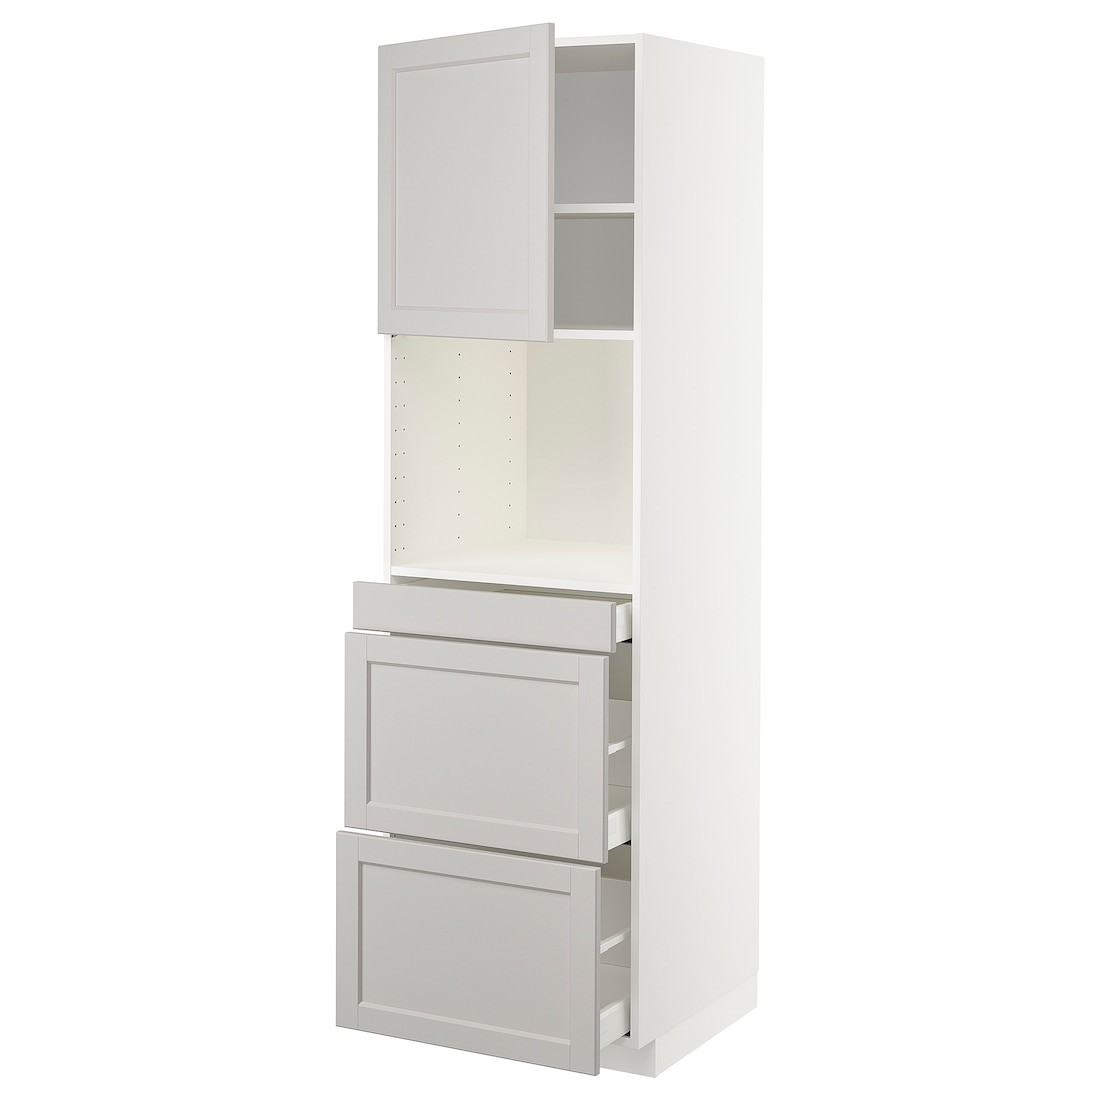 IKEA METOD МЕТОД / MAXIMERA МАКСИМЕРА Высокий шкаф для СВЧ / дверца / 3 ящика, белый / Lerhyttan светло-серый, 60x60x200 см 59466935 | 594.669.35